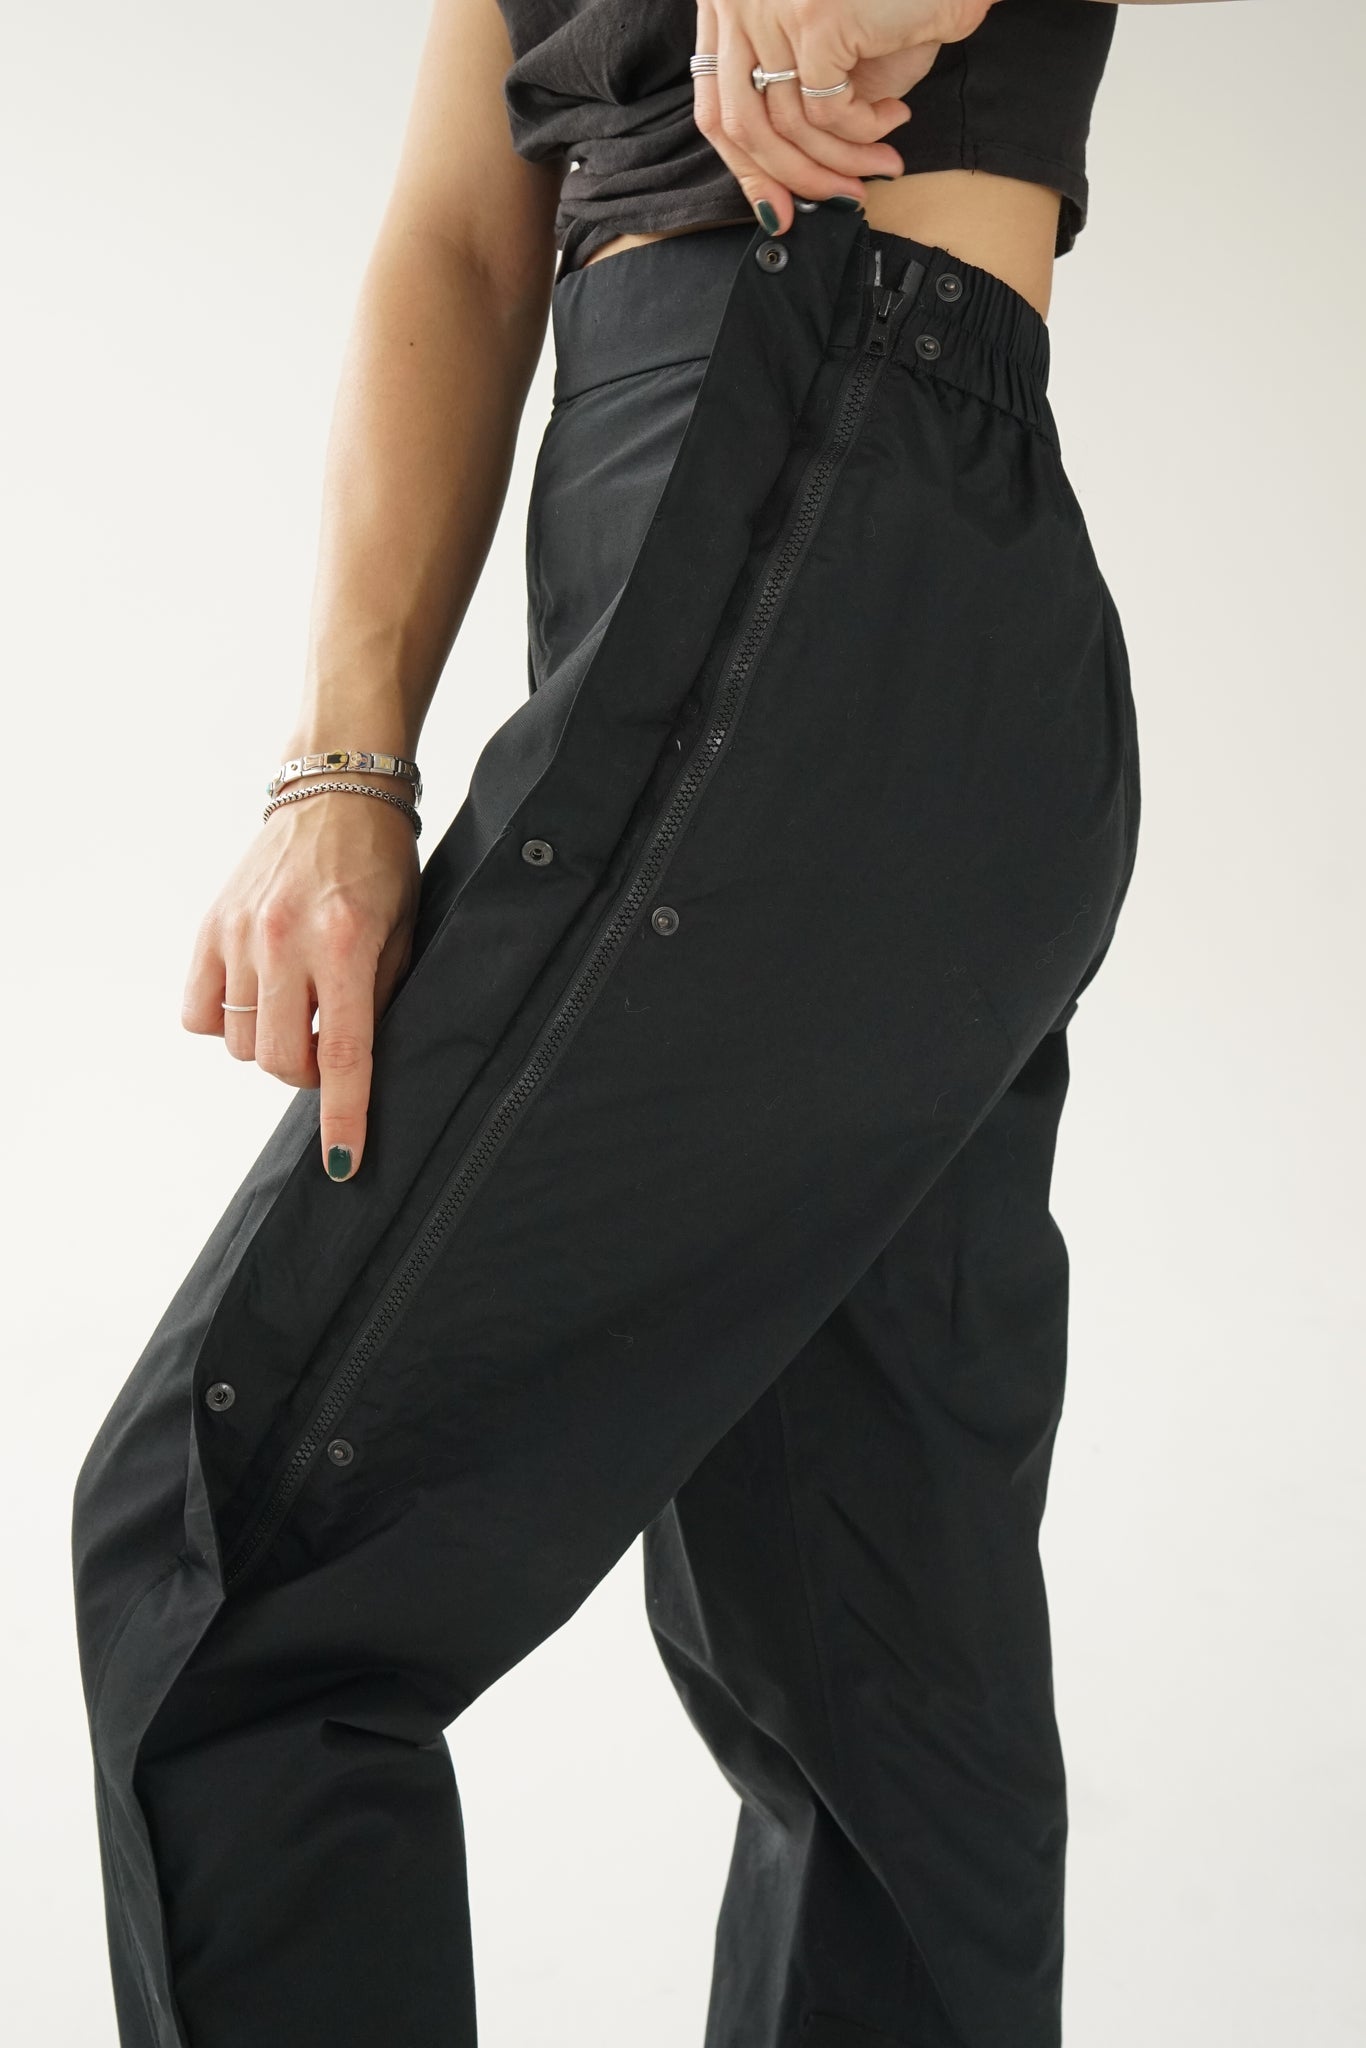 Pantalon de neige cargo Edelweiss gris/noir unisexe taille 32 (S-M) –  Ribotti Vintage